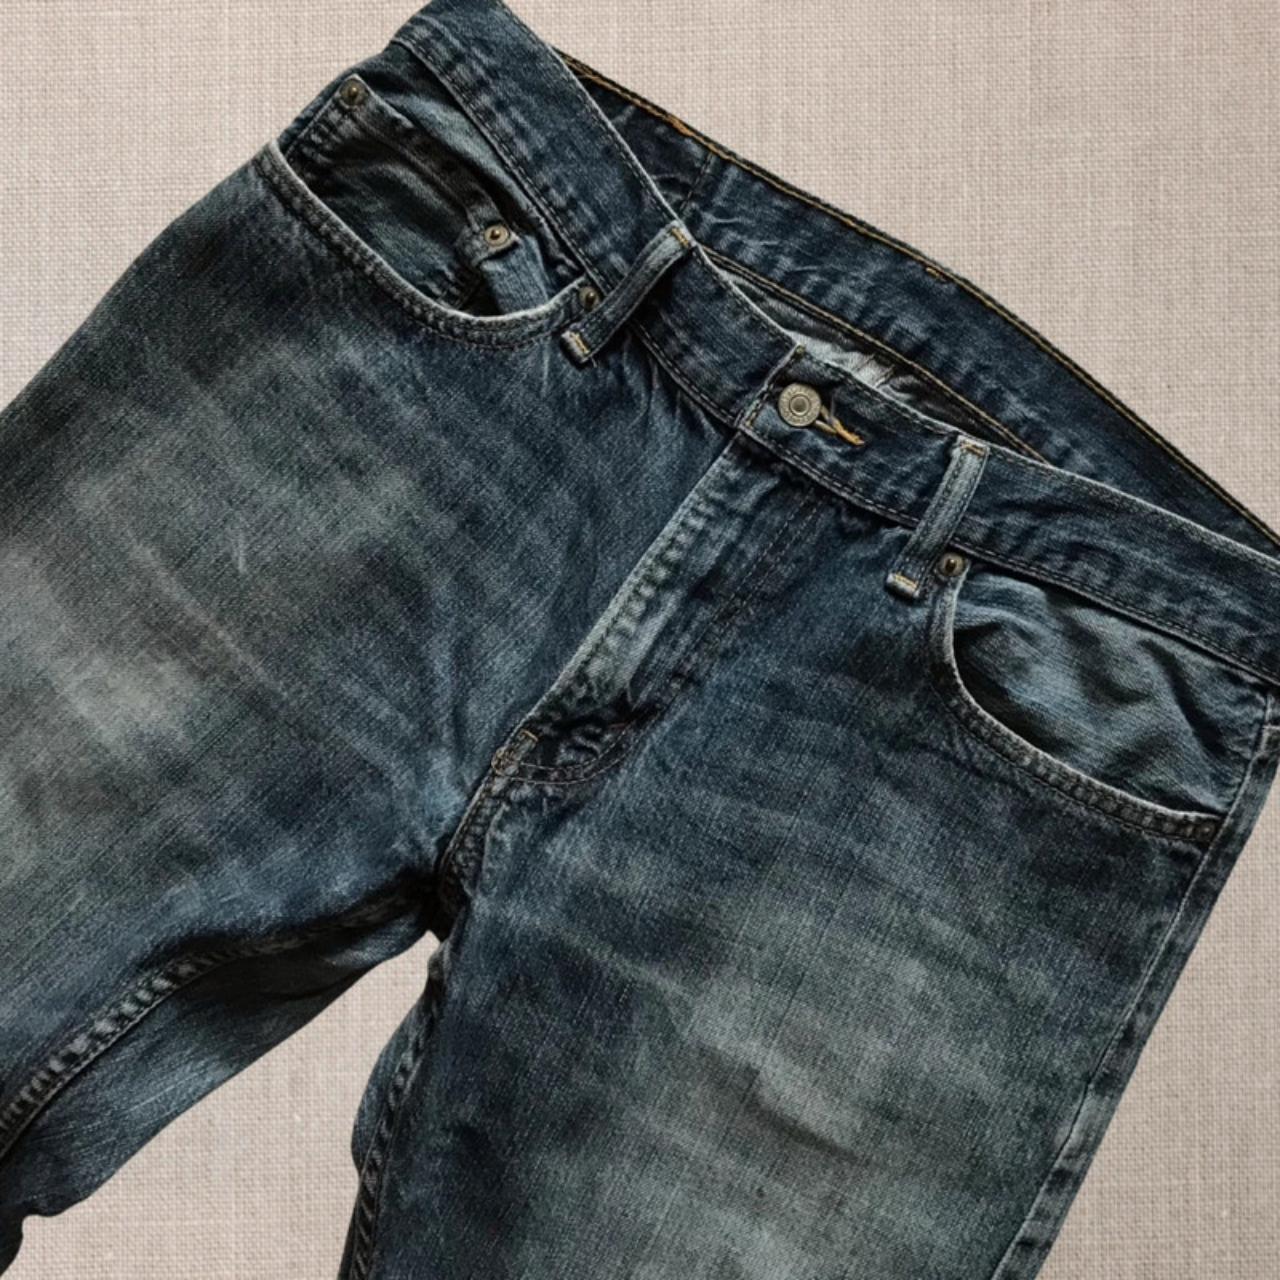 Vintage Men Levi’s 514 Jeans - W34 L34 Great pair... - Depop